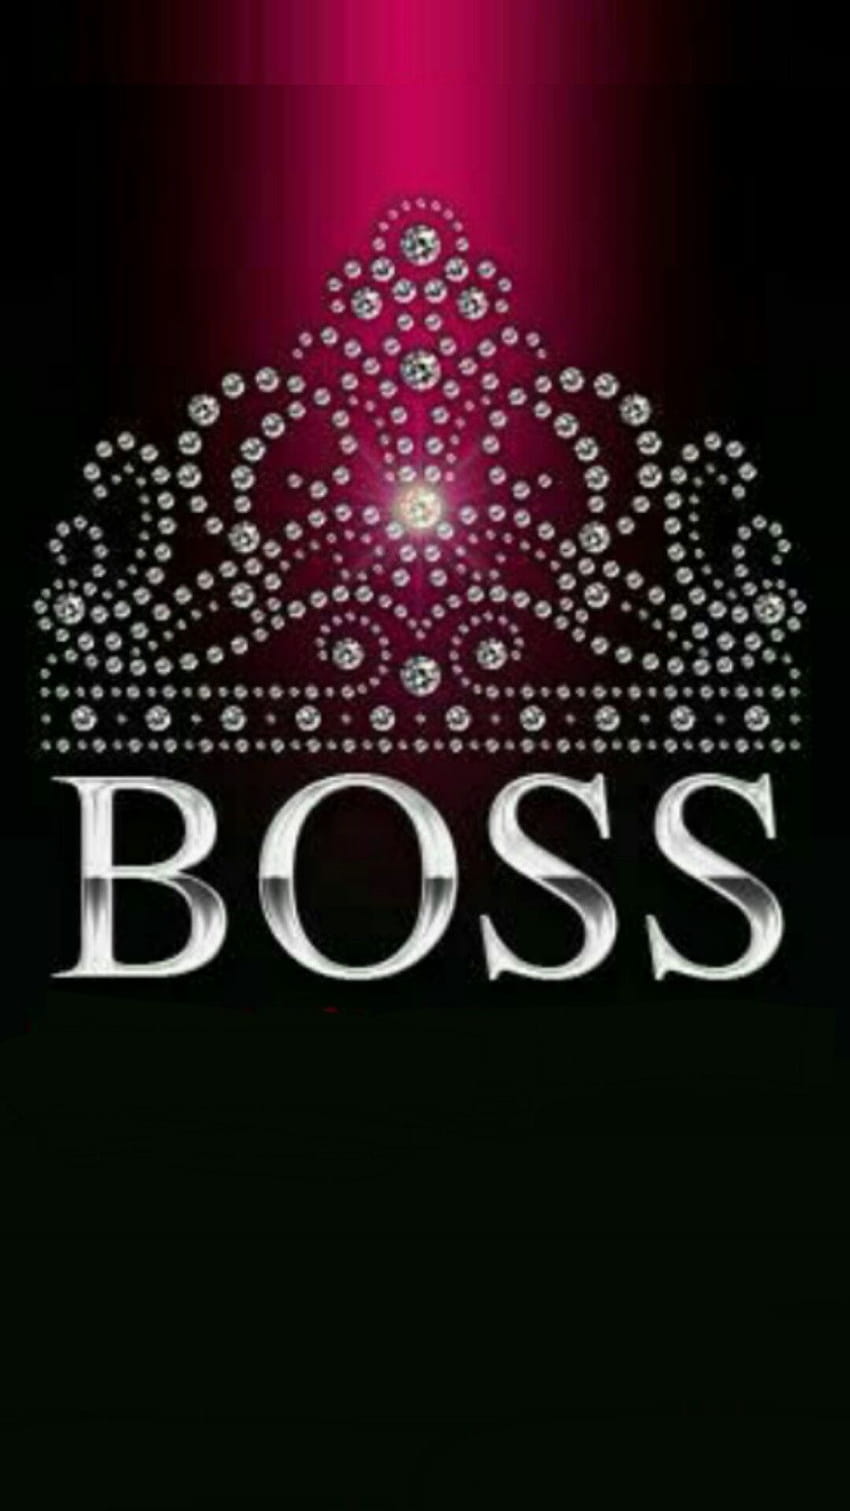 Boss logo HD wallpapers  Pxfuel